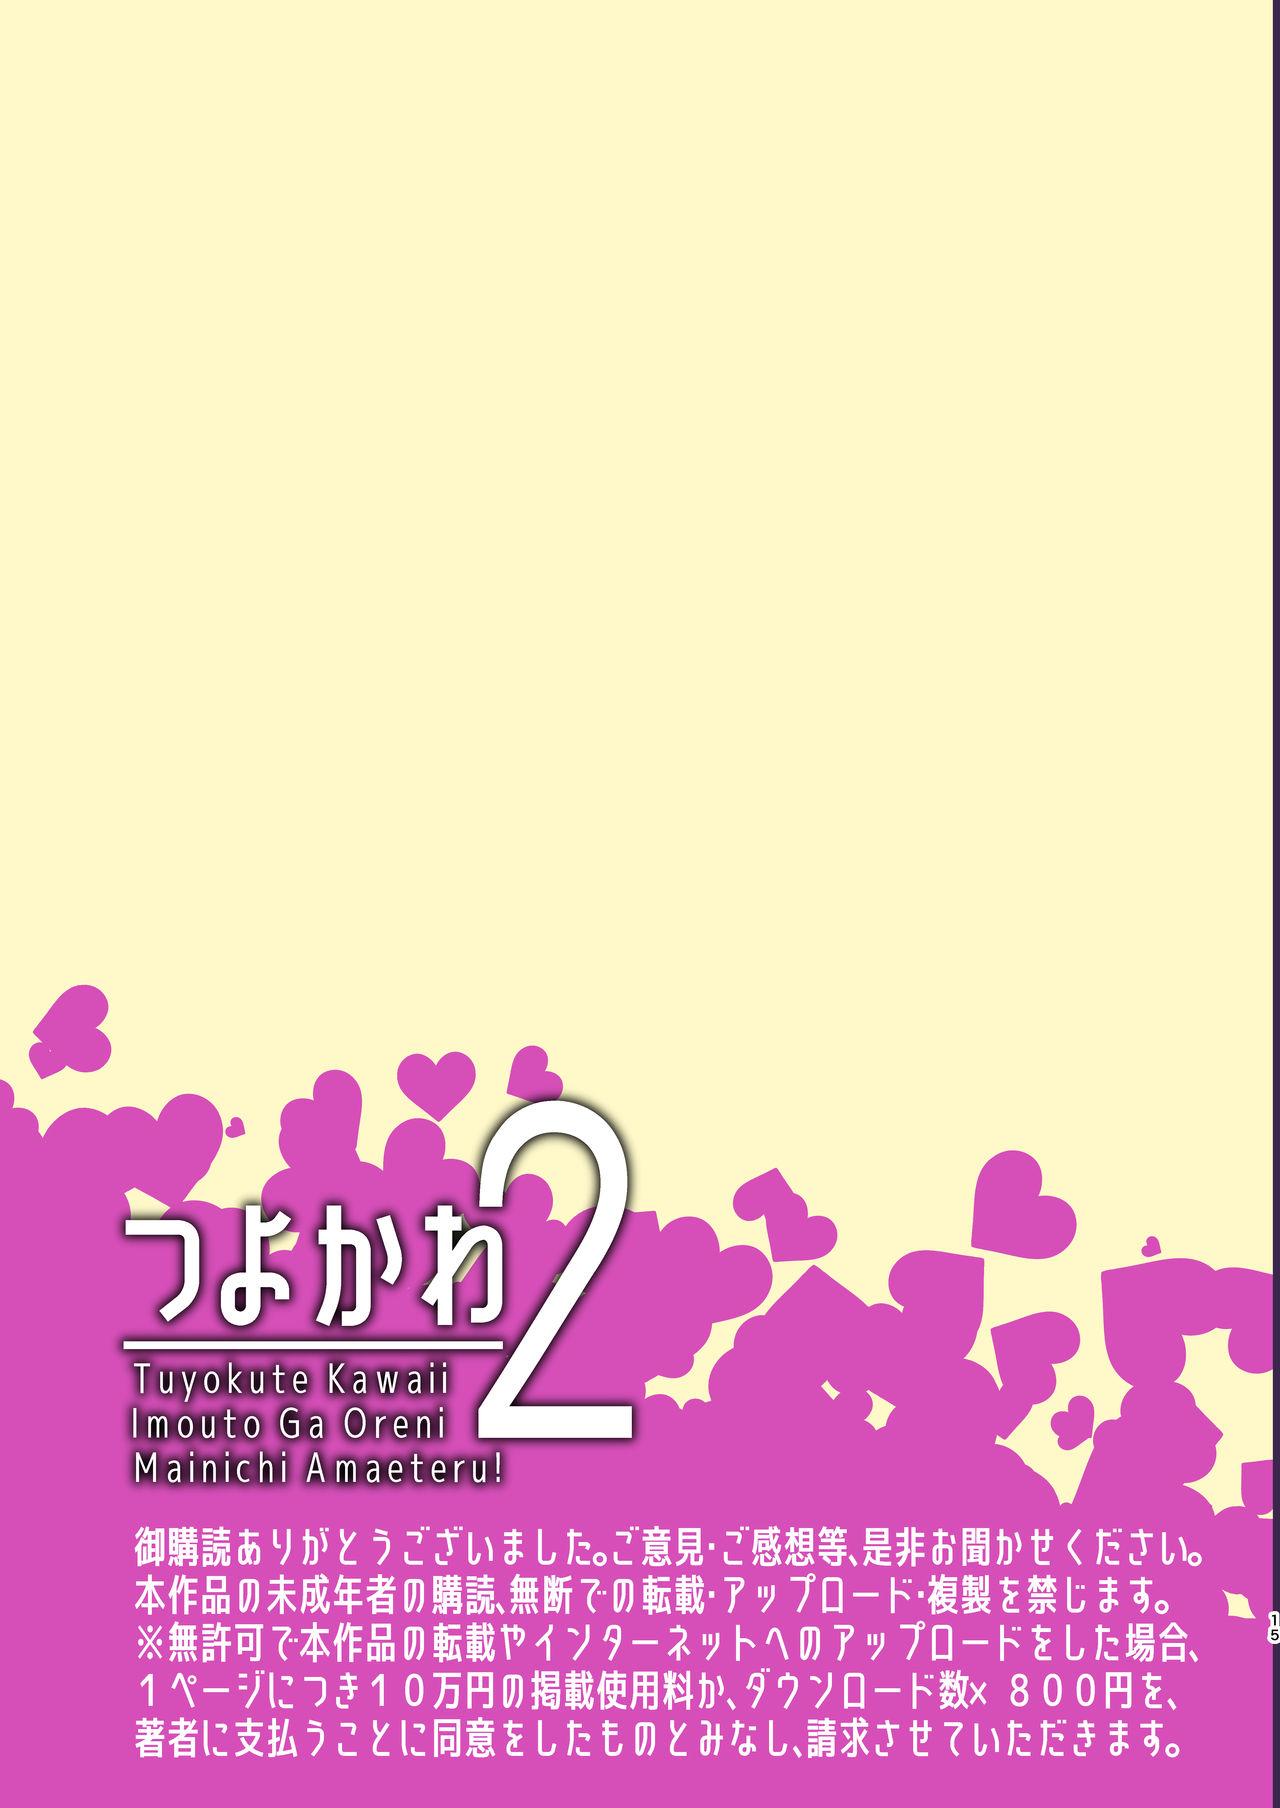 Tsuyokawa Imouto x Kyousei Love Koubi 2 - Tuyokute Kawaii Imouto Ga Oreni Mainichi Amaeteru! 15